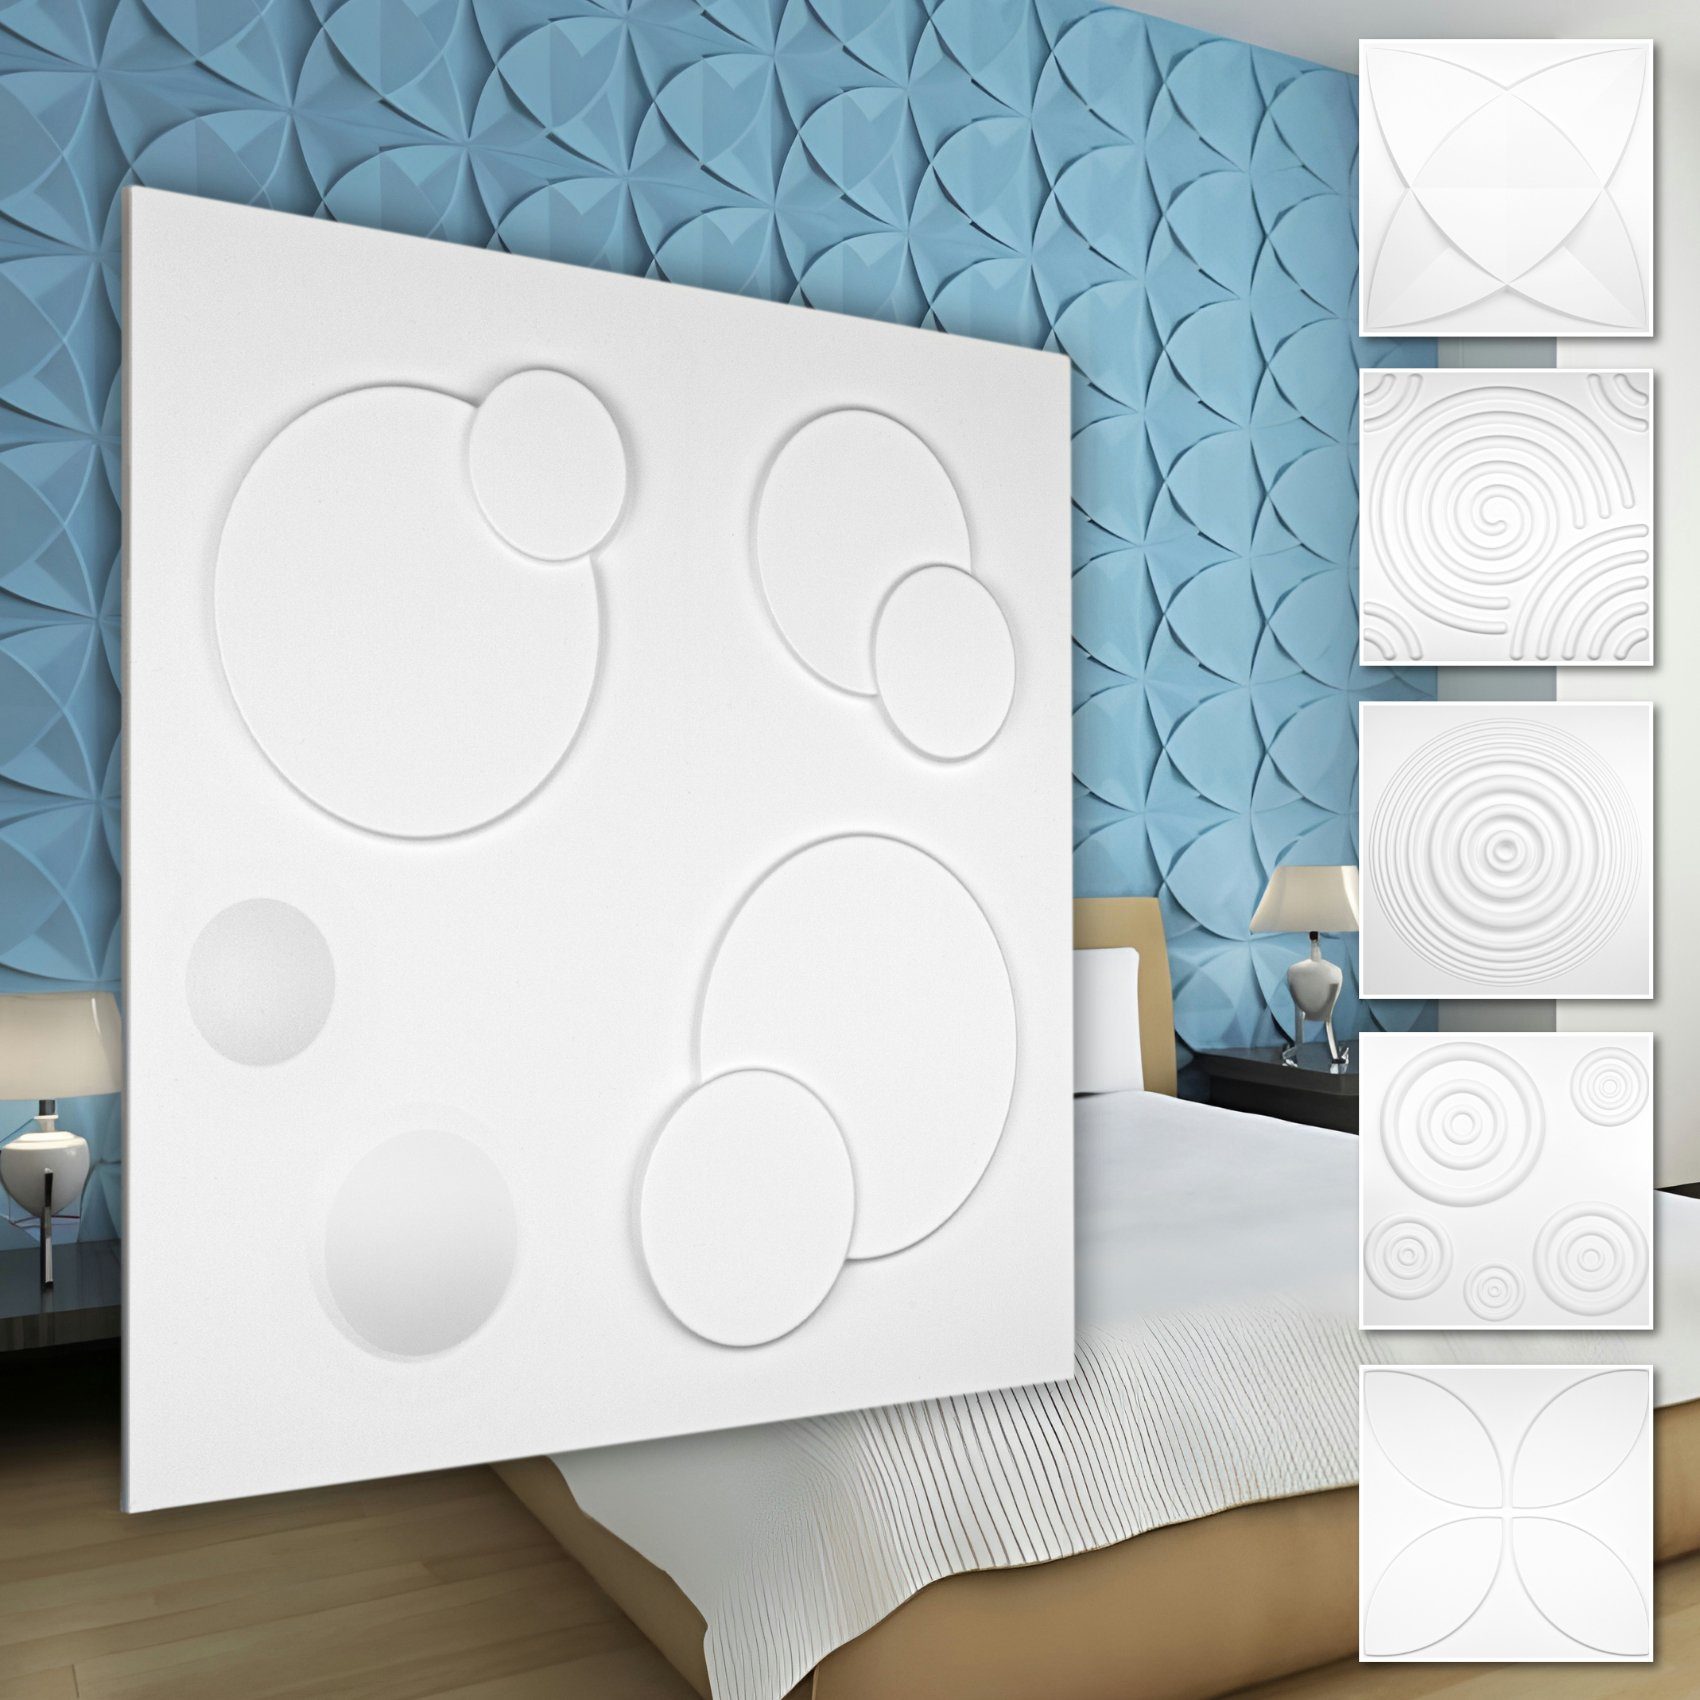 Hexim Wanddekoobjekt HD108 (PVC Kunststoff - weiße Wandverkleidung mit 3D Optik - Kringel Motive (0.25 qm 1 Platte) Hintergrund Schlafzimmer)